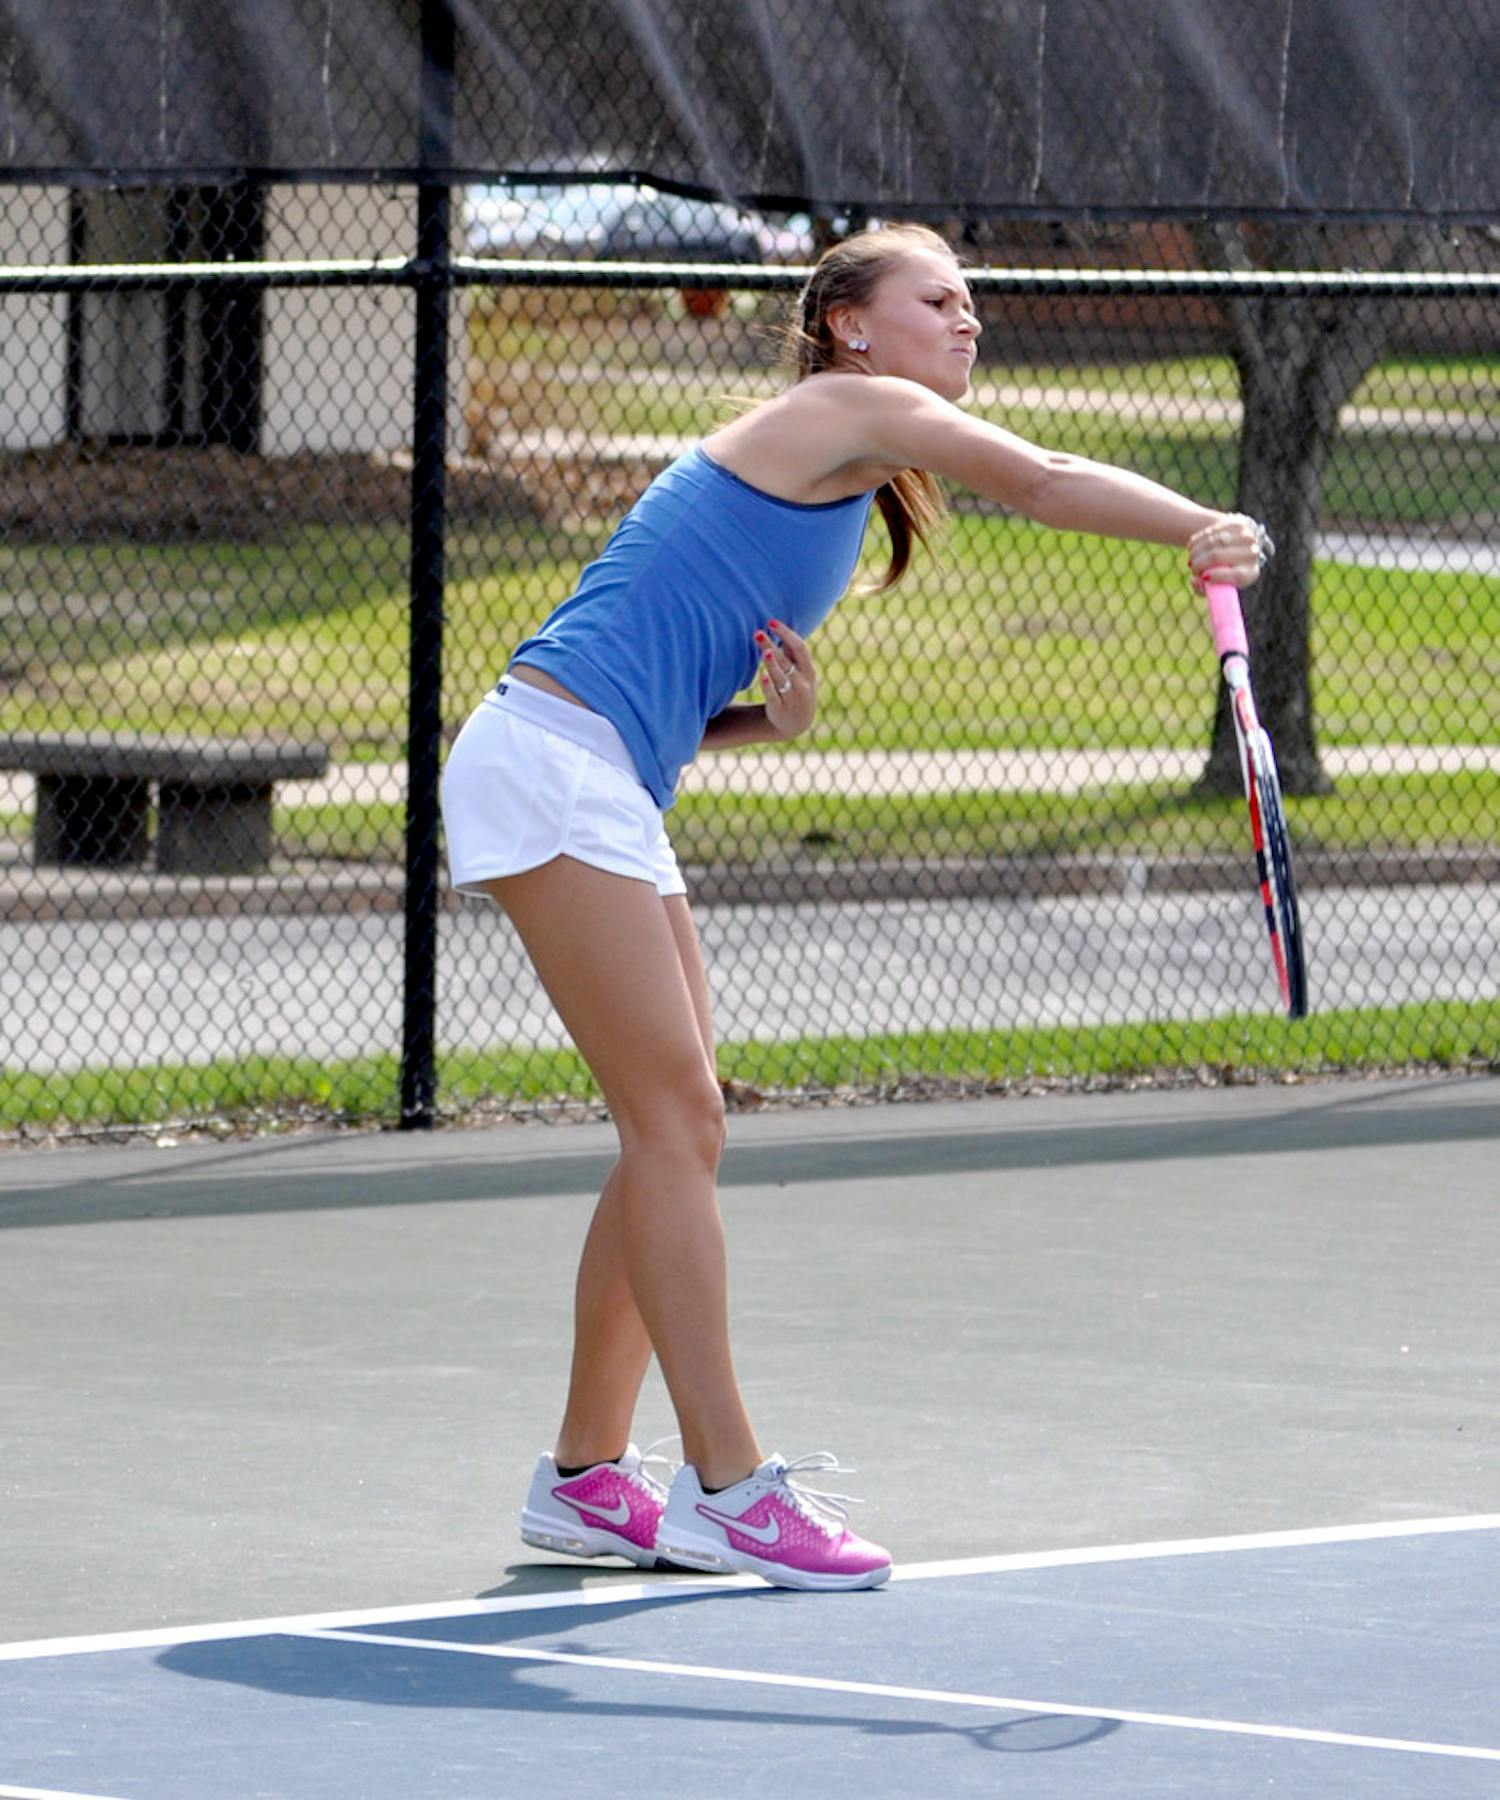 20140417-SMC-Tennis-vs-Hope-Sexton-Caroline-Genco